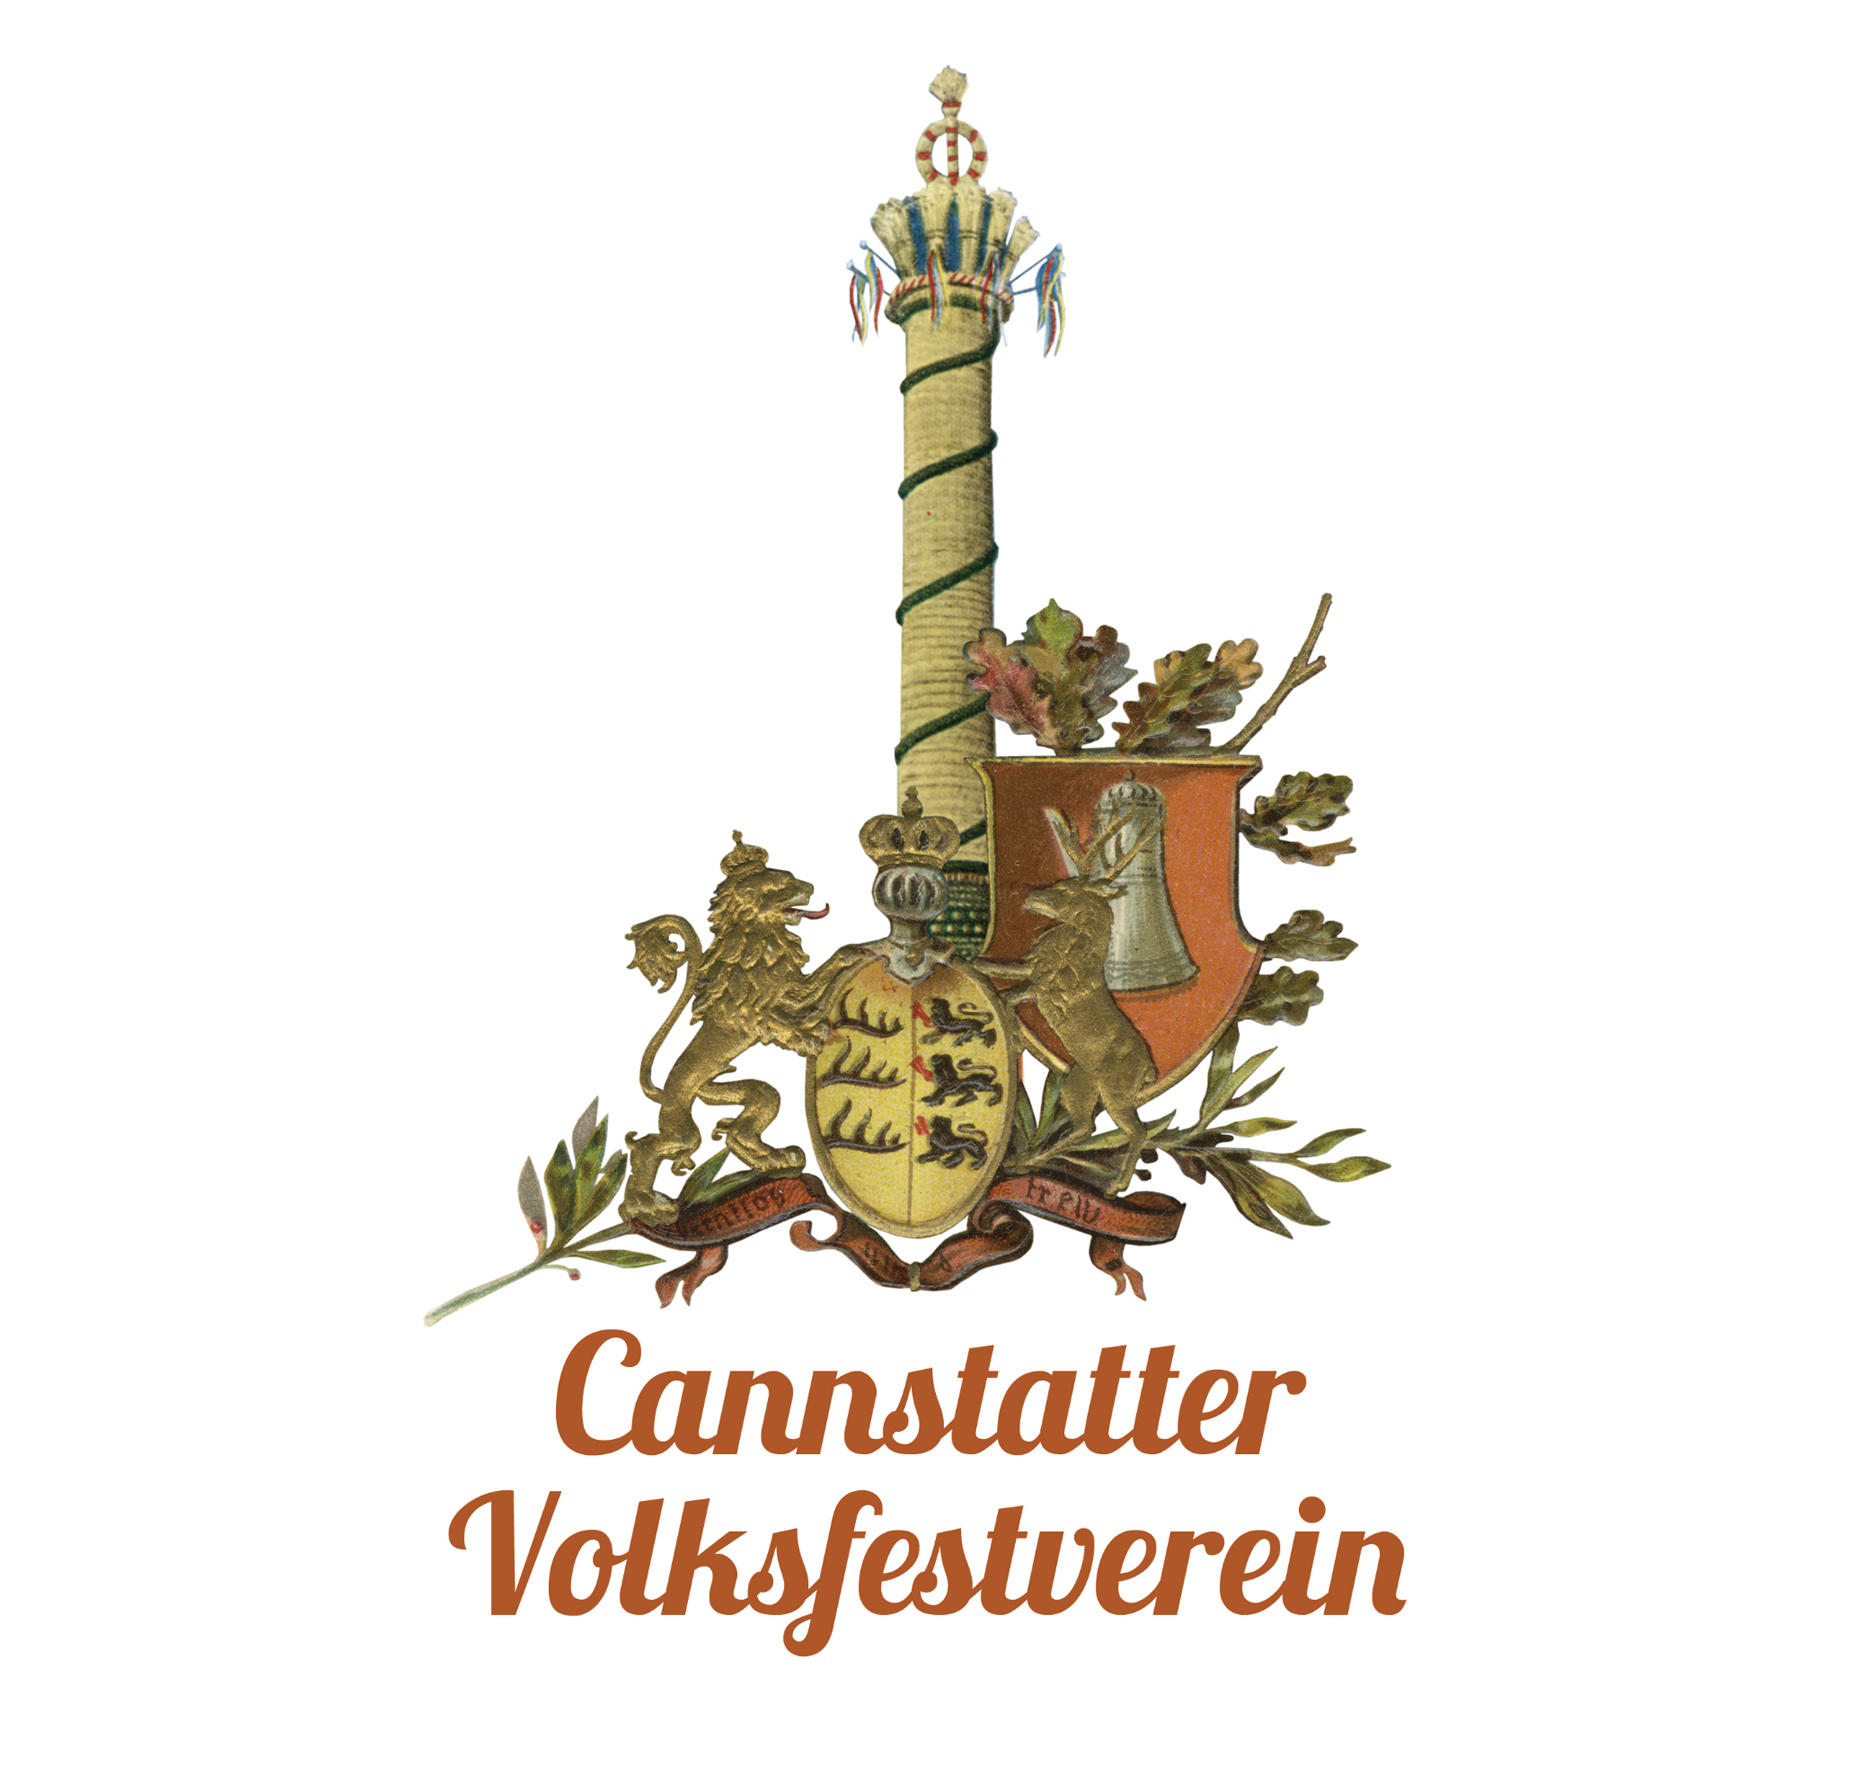 (c) Cannstatter-volksfestverein.de